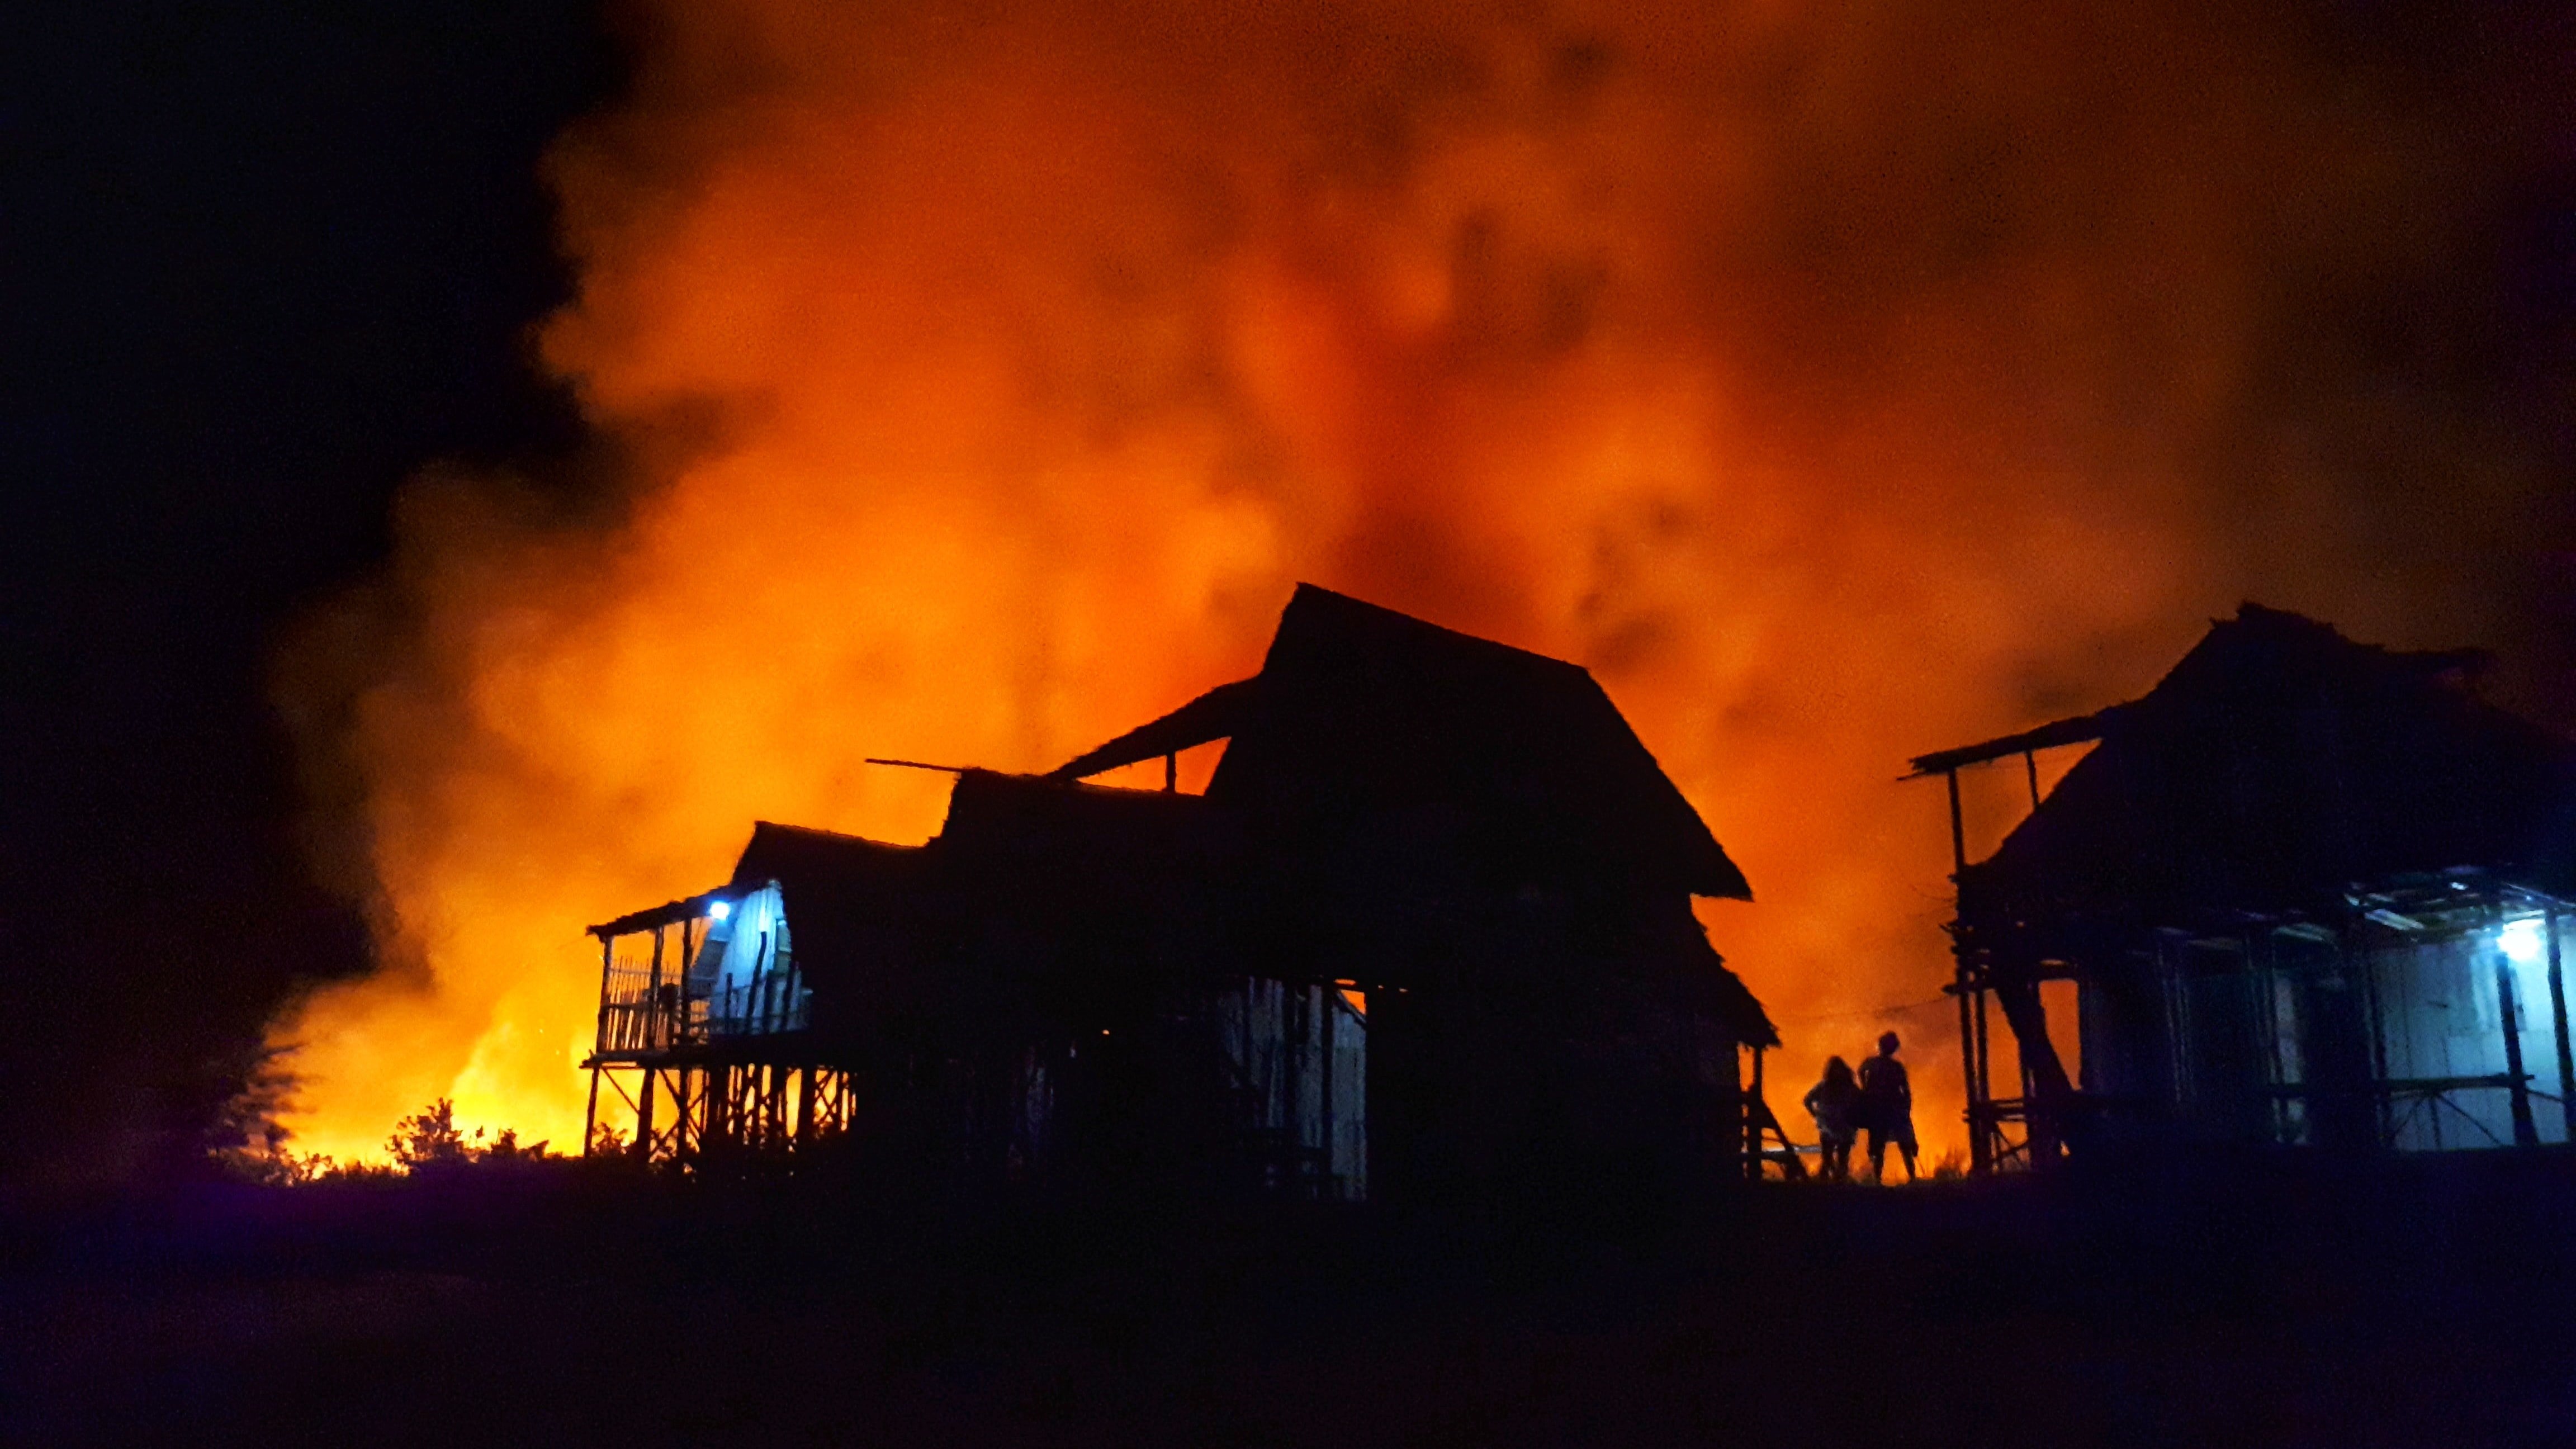 George et Catherine ont perdu leur maison dans un incendie | Photo : Pexels